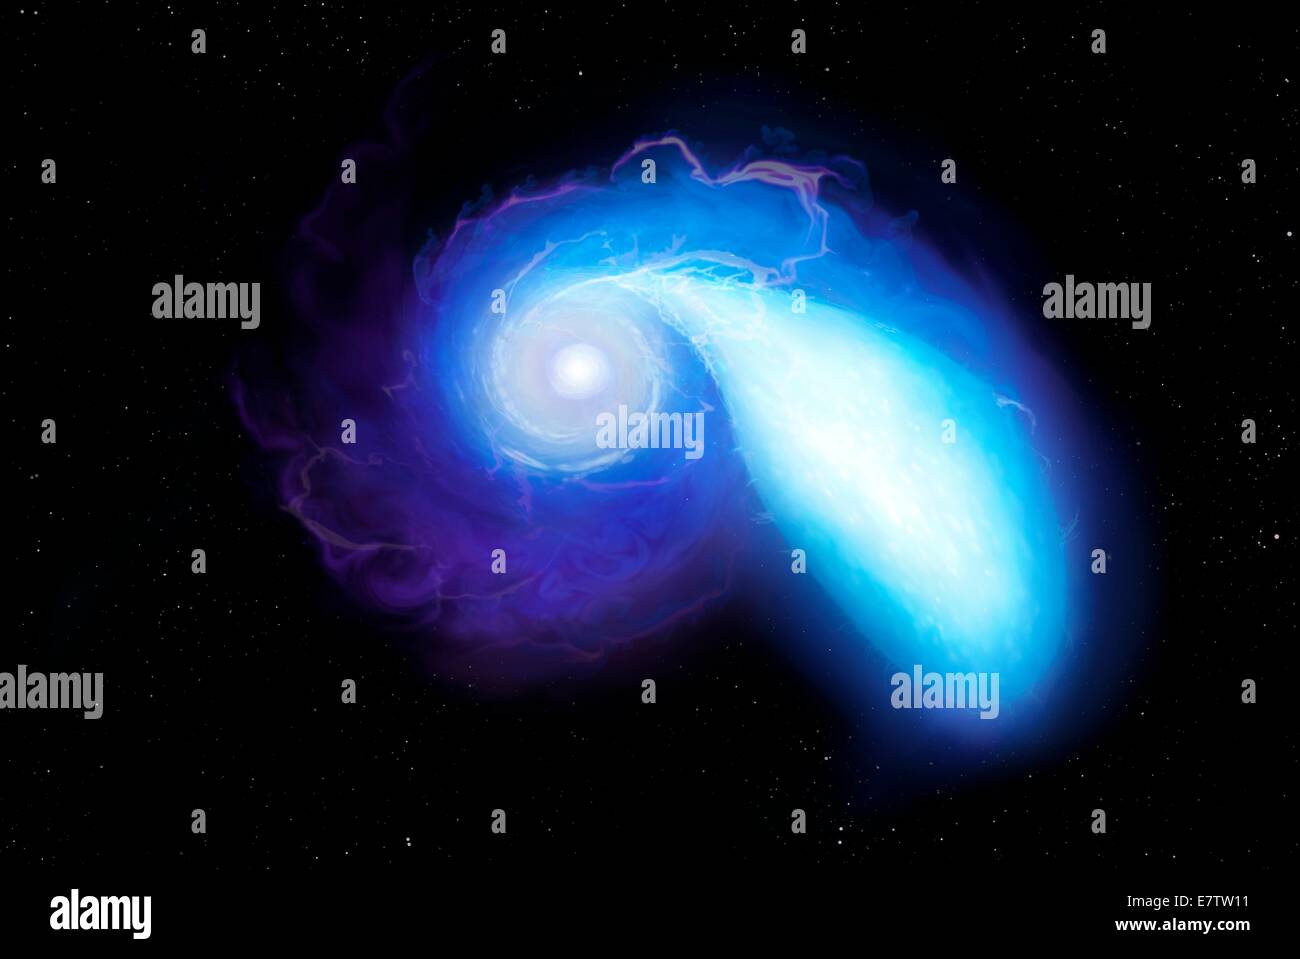 Ilustración de un par de estrellas a punto de fusión. Los objetos en cuestión son cadáveres estelares. A la izquierda se ve una estrella de neutrones, la compacta de restos de una estrella que explotó en una supernova. Es mera kilómetros a través. A la derecha está una enana blanca, un differe Foto de stock